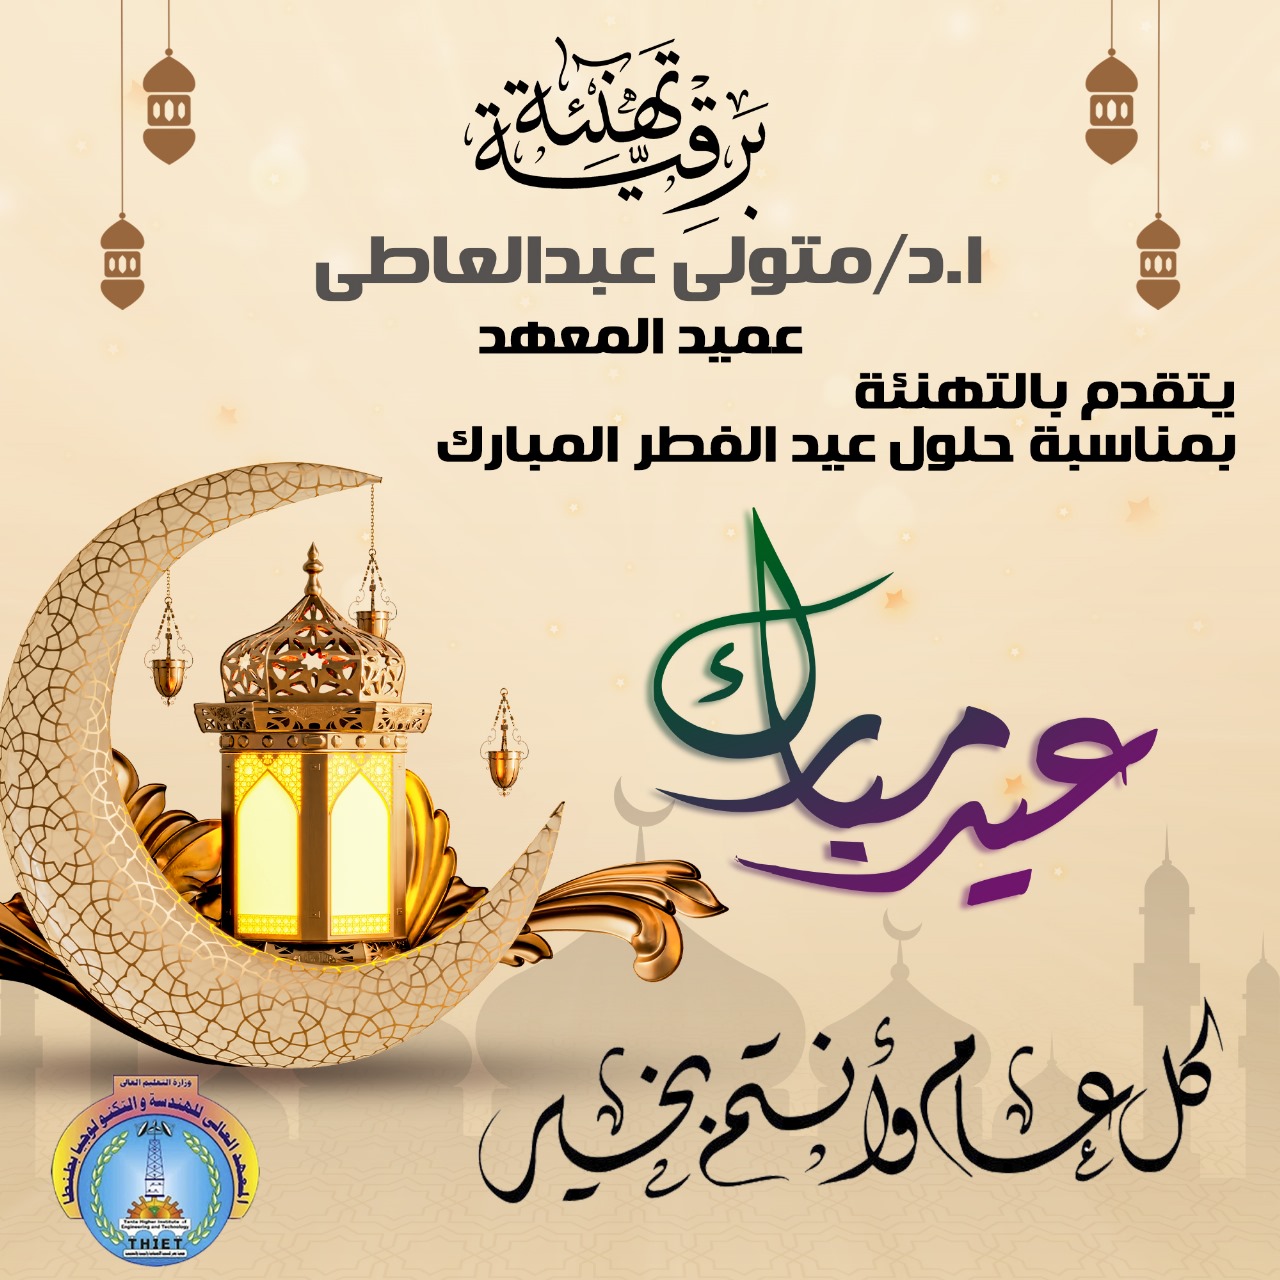 تهنئة بمناسبة حلول عيد الفطر المبارك أعاده الله علينا بالخير و اليمن و البركات